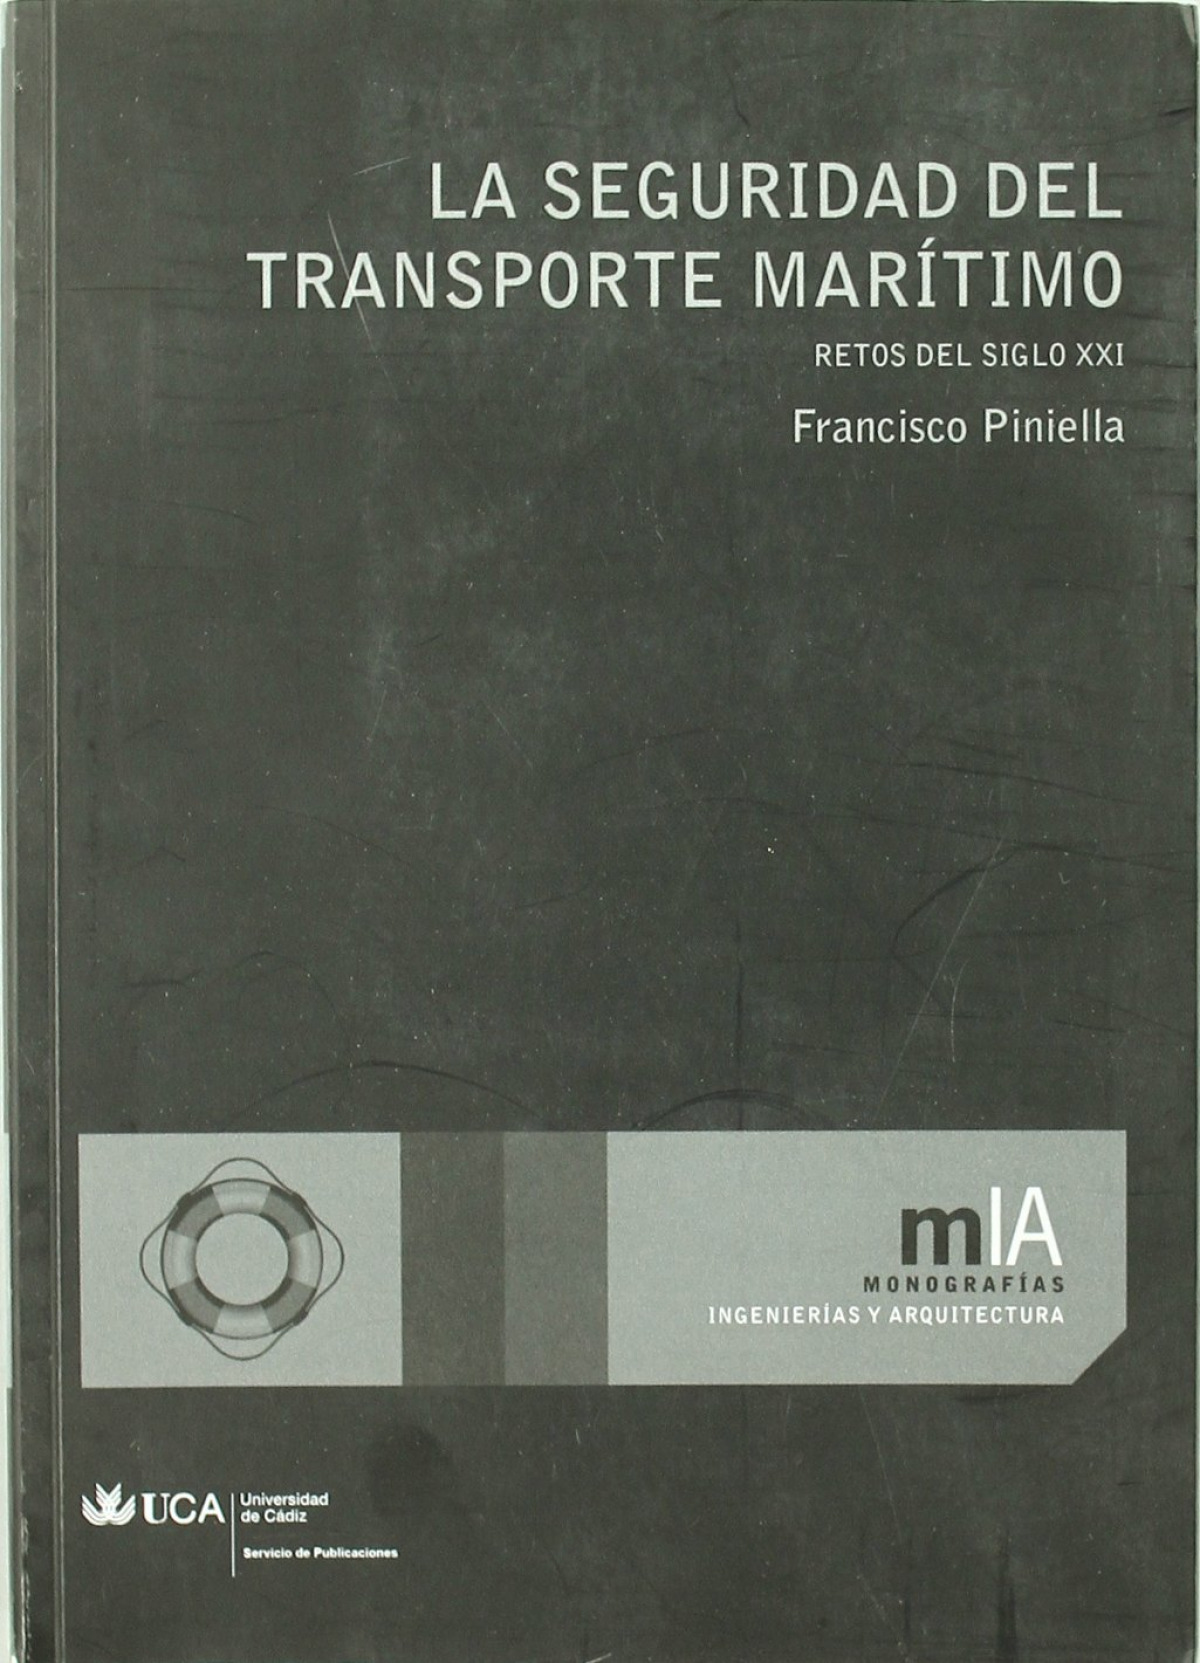 La seguridad del transporte marítimo - Piniella Corbacho, Francisco